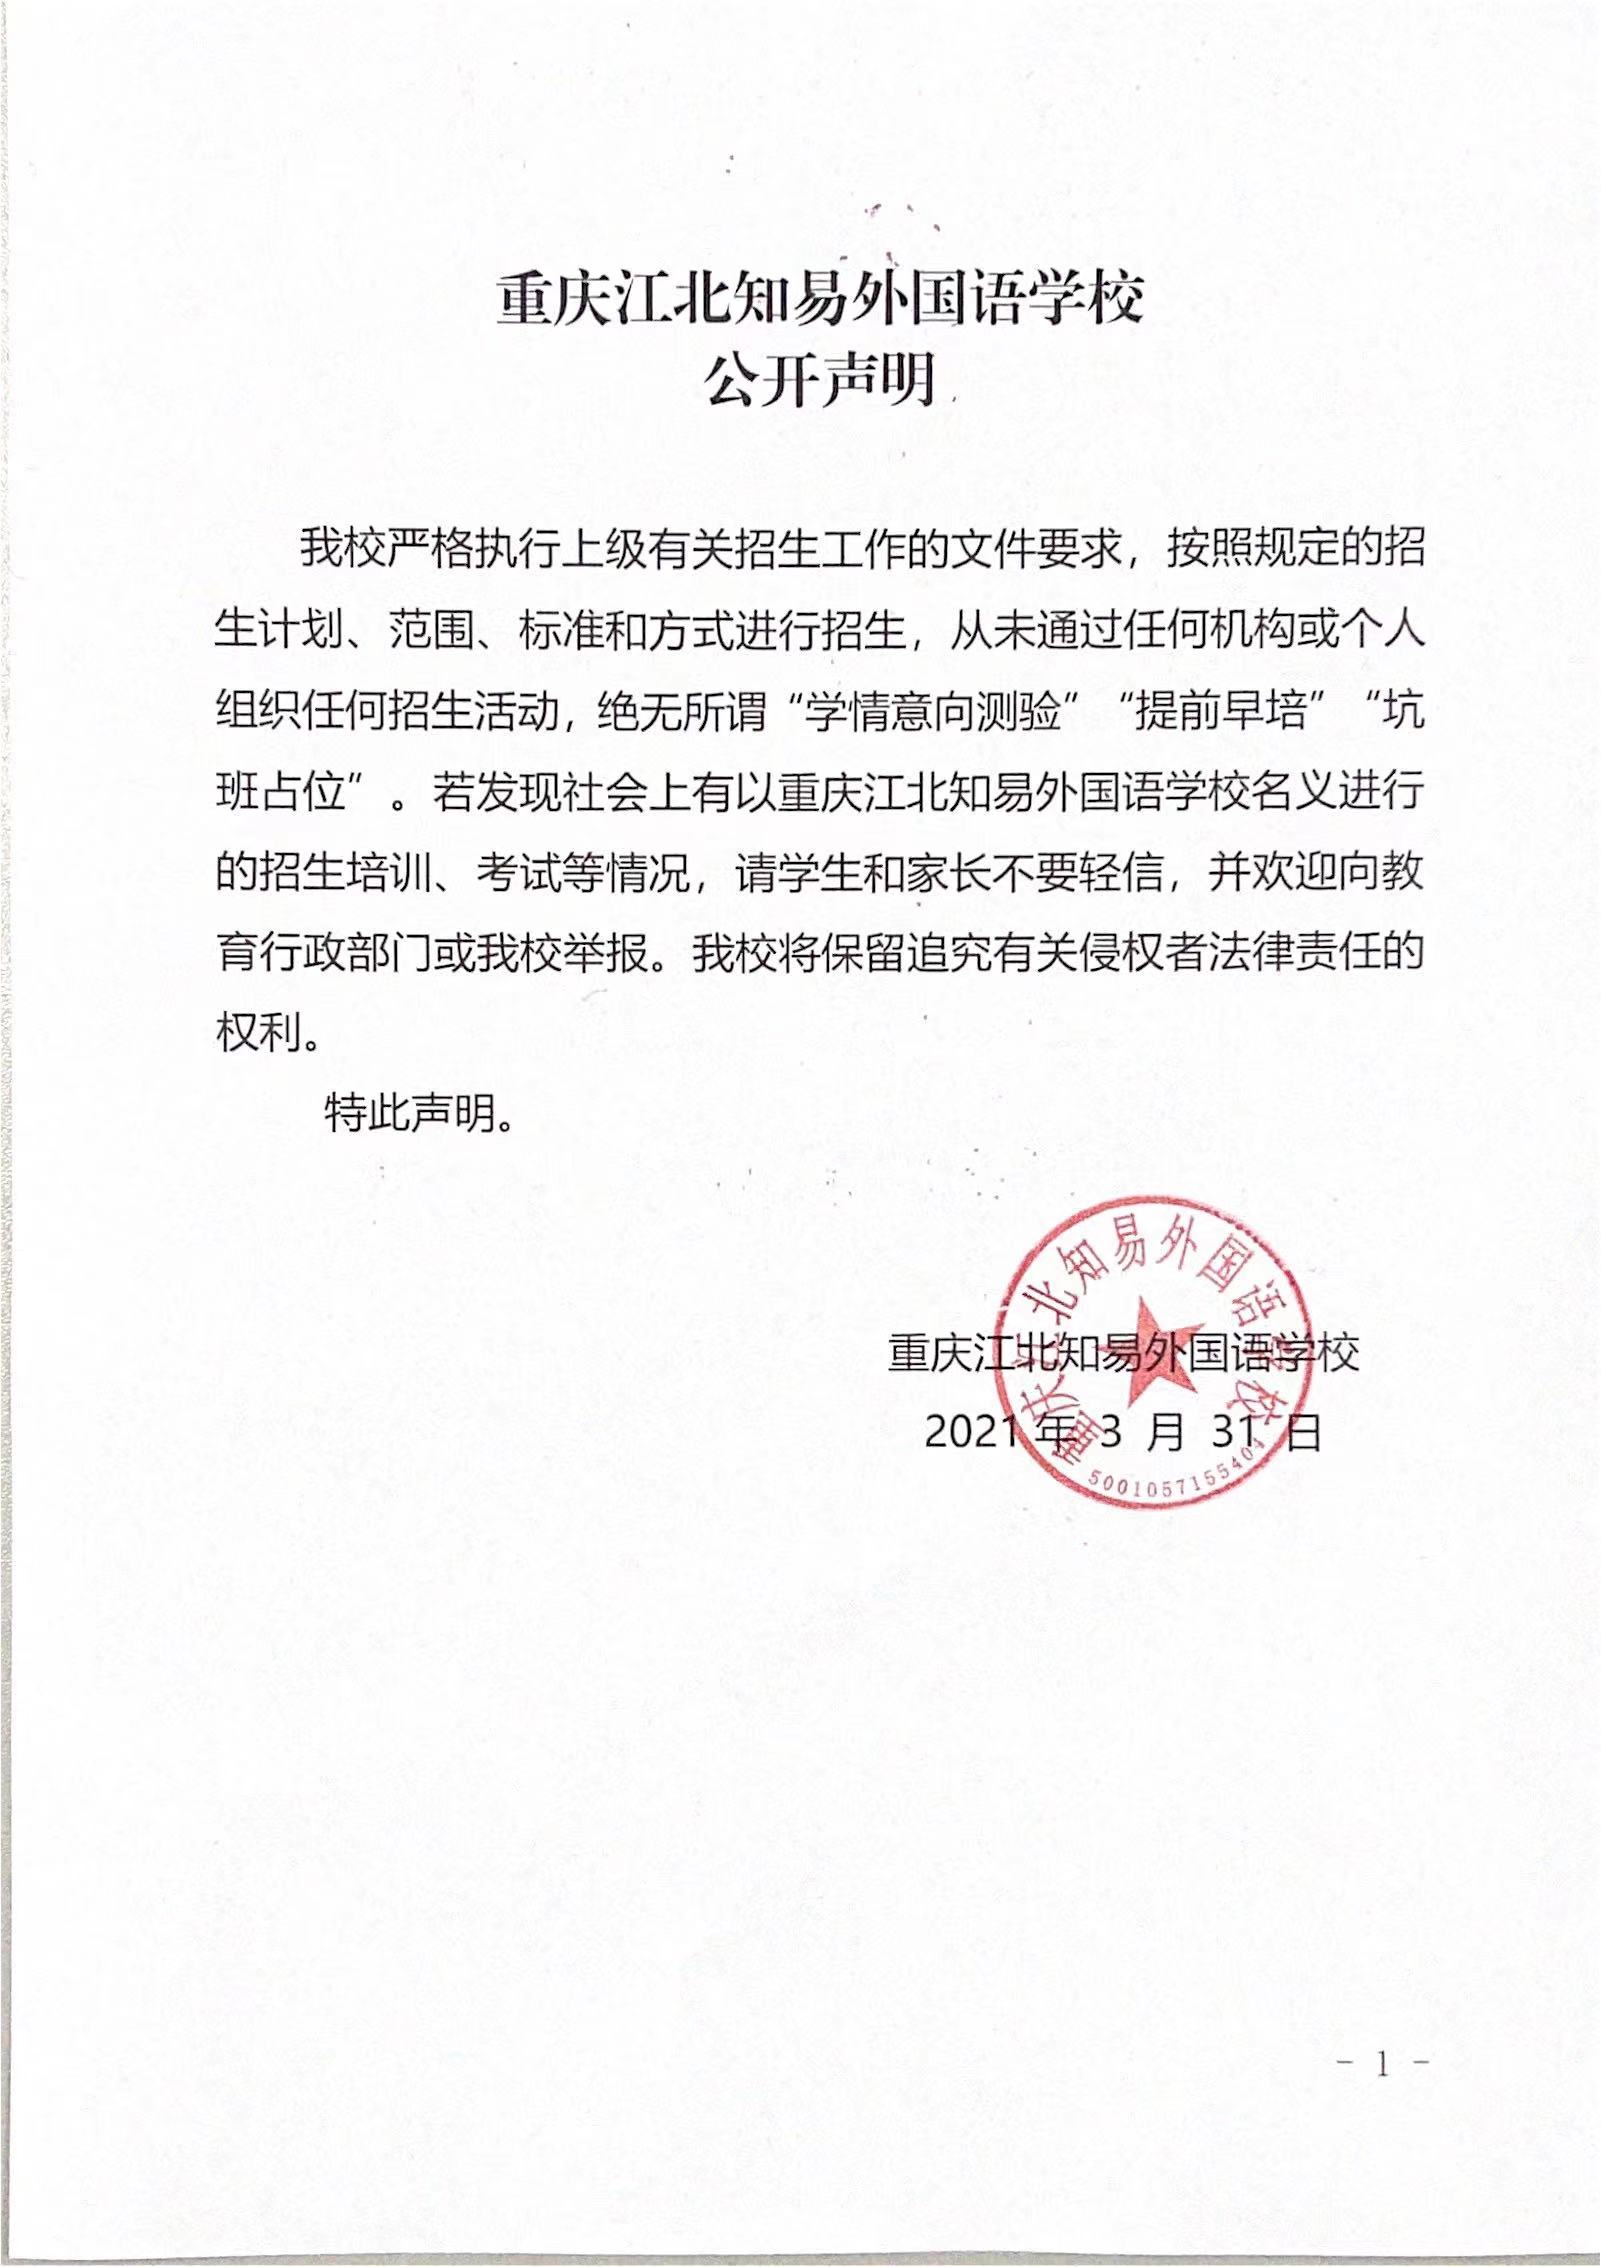 重庆江北知易外国语学校公开声明(图1)